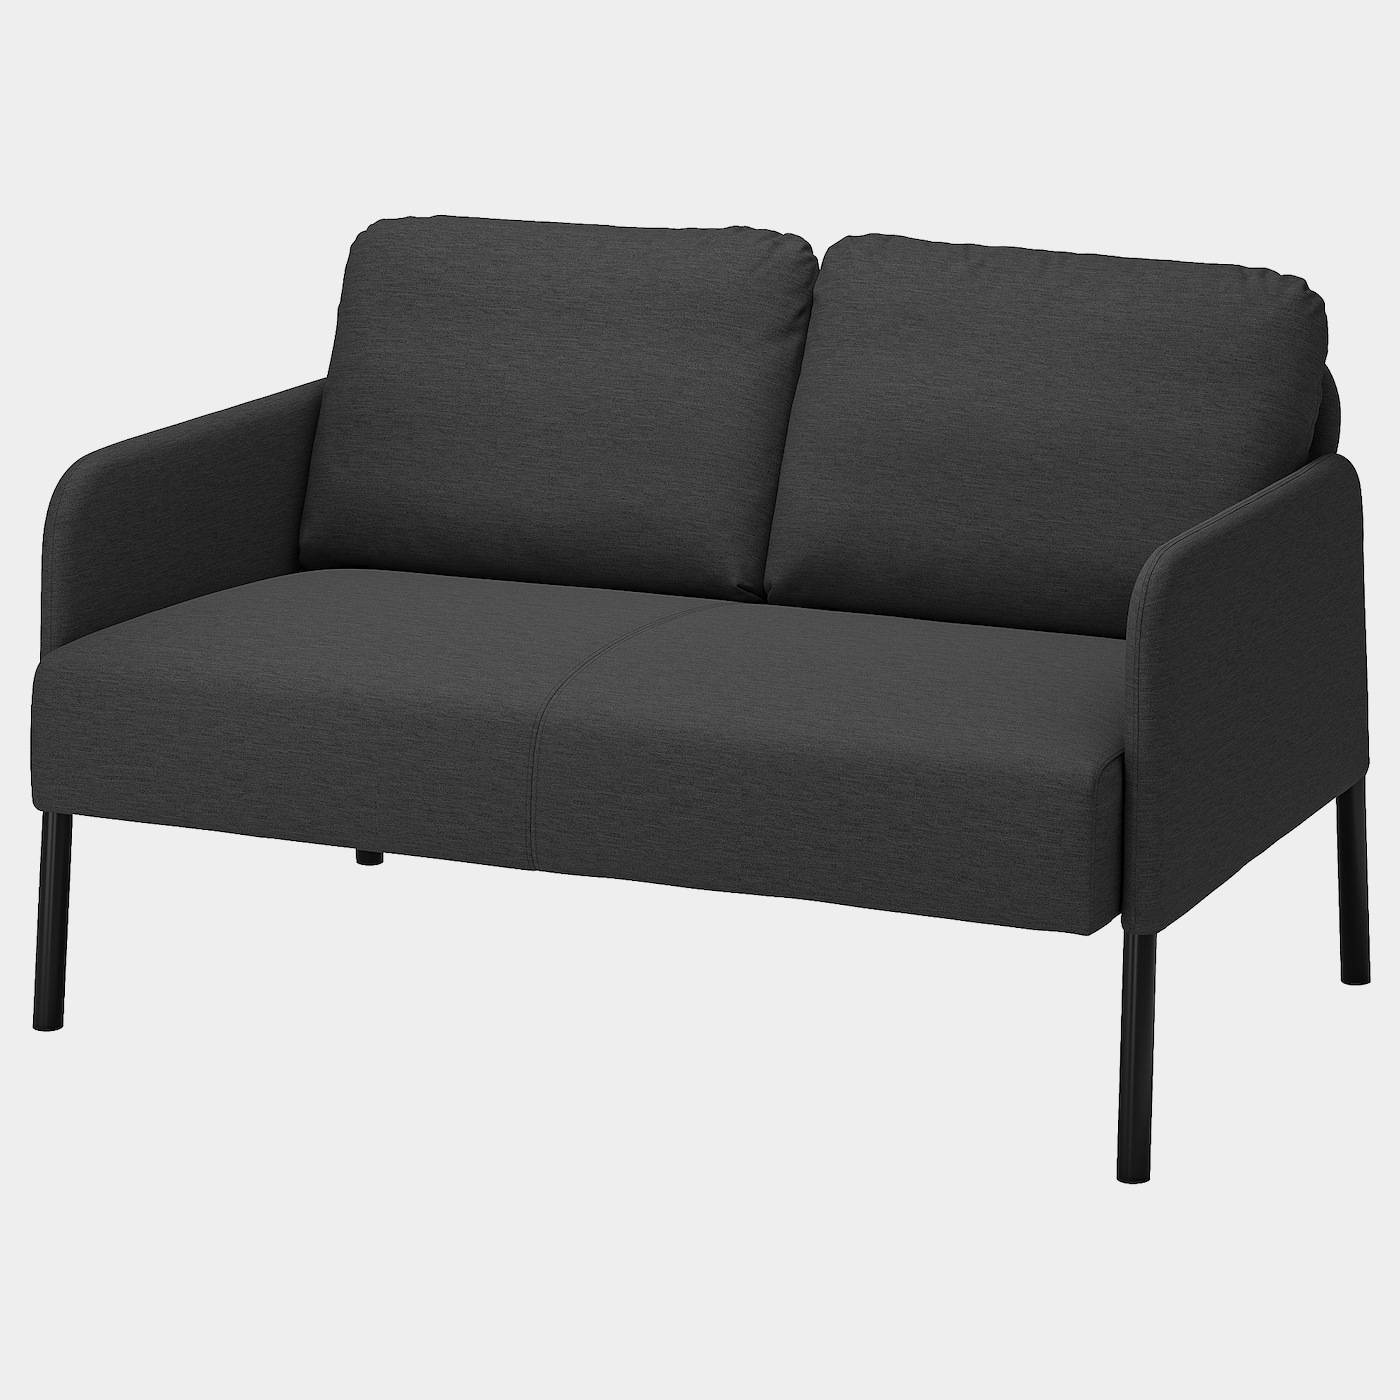 GLOSTAD 2er-Sofa  -  - Möbel Ideen für dein Zuhause von Home Trends. Möbel Trends von Social Media Influencer für dein Skandi Zuhause.